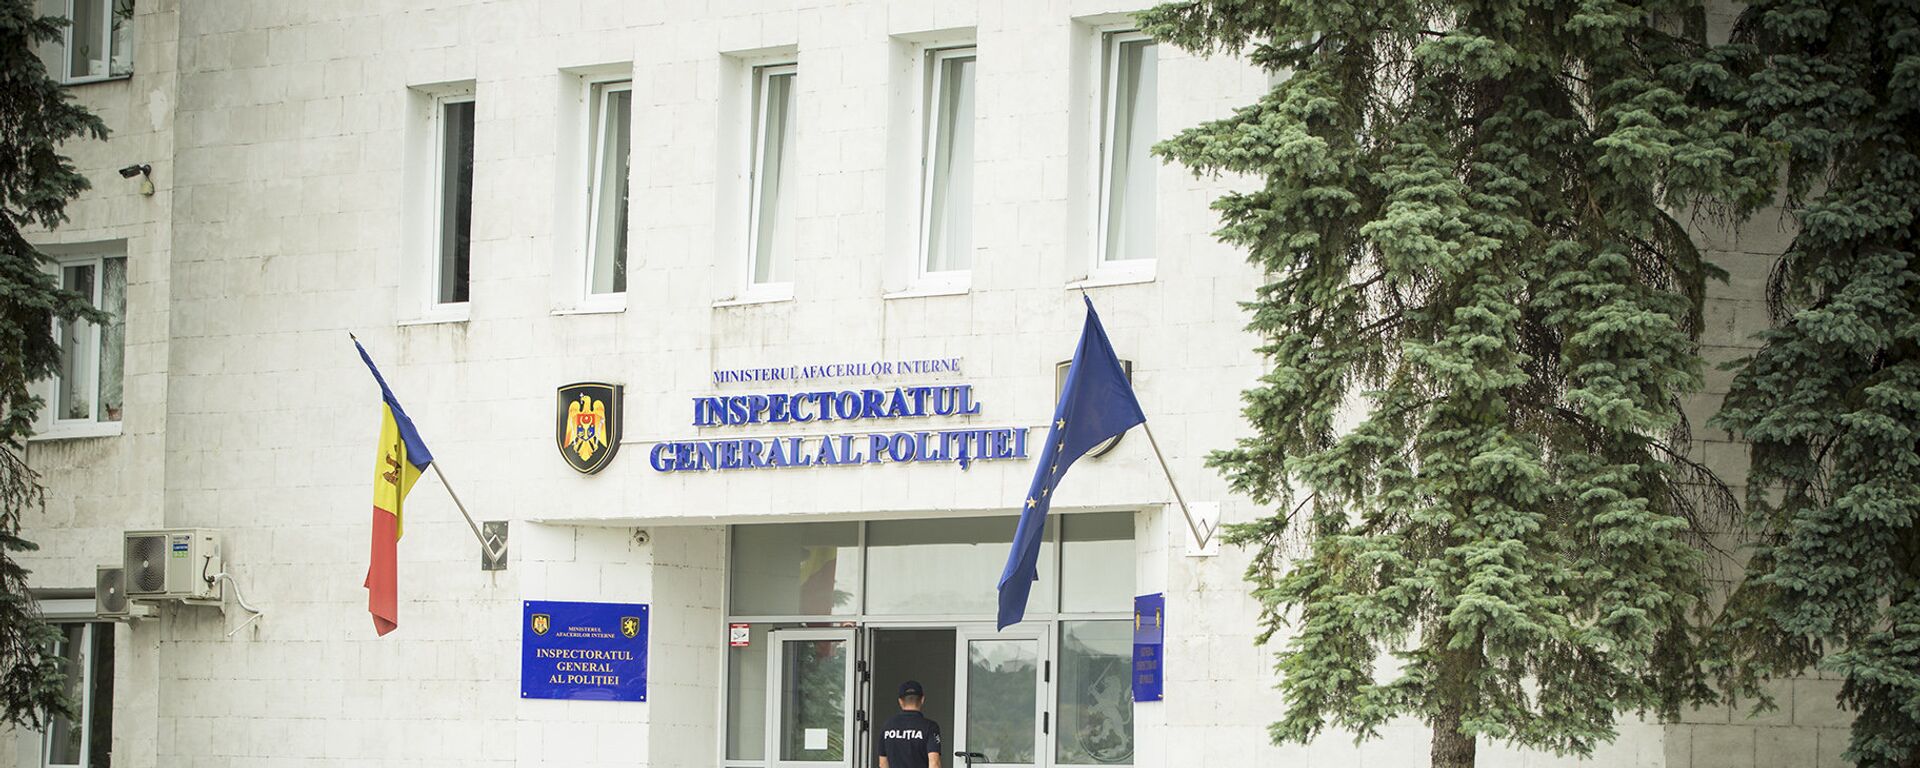 Inspectoratu general al poliției - Sputnik Молдова, 1920, 14.05.2021